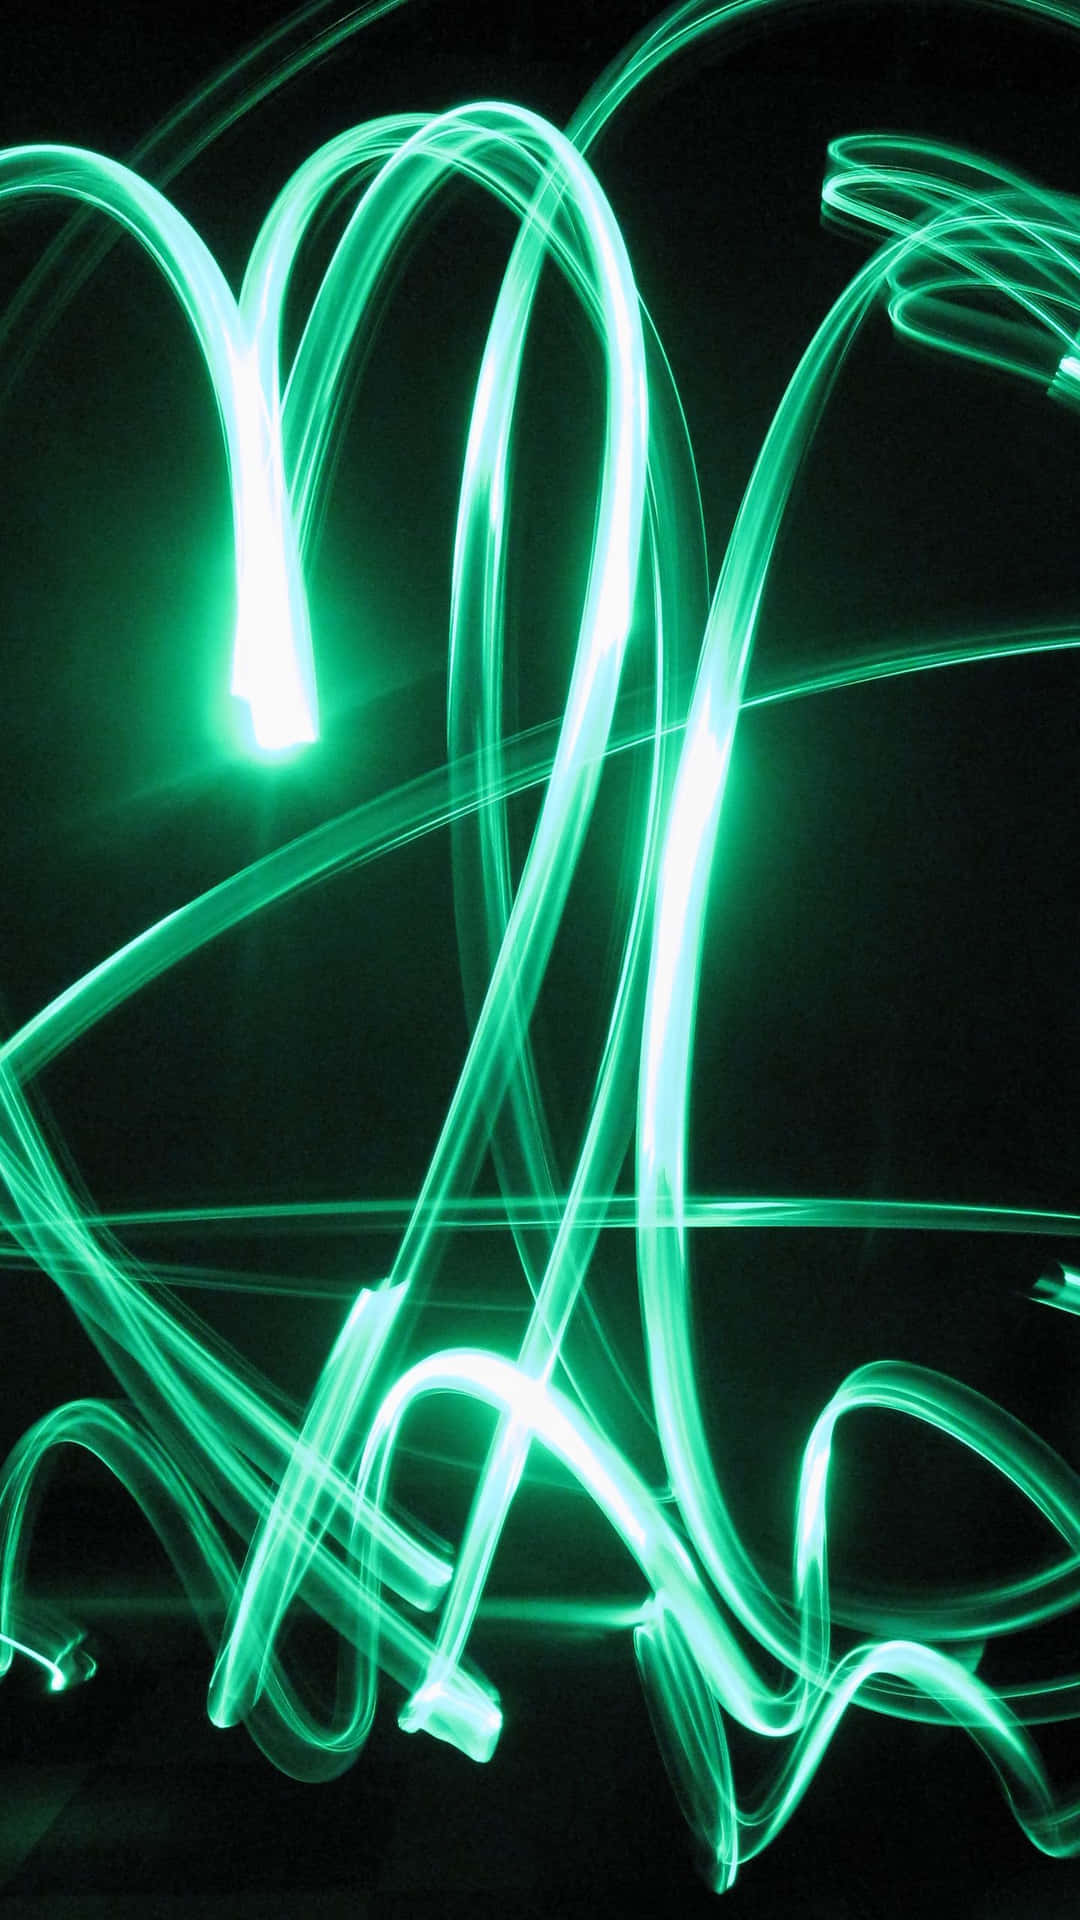 Corazonesverdes Con Luces Led En Un Fondo Oscuro. Fondo de pantalla